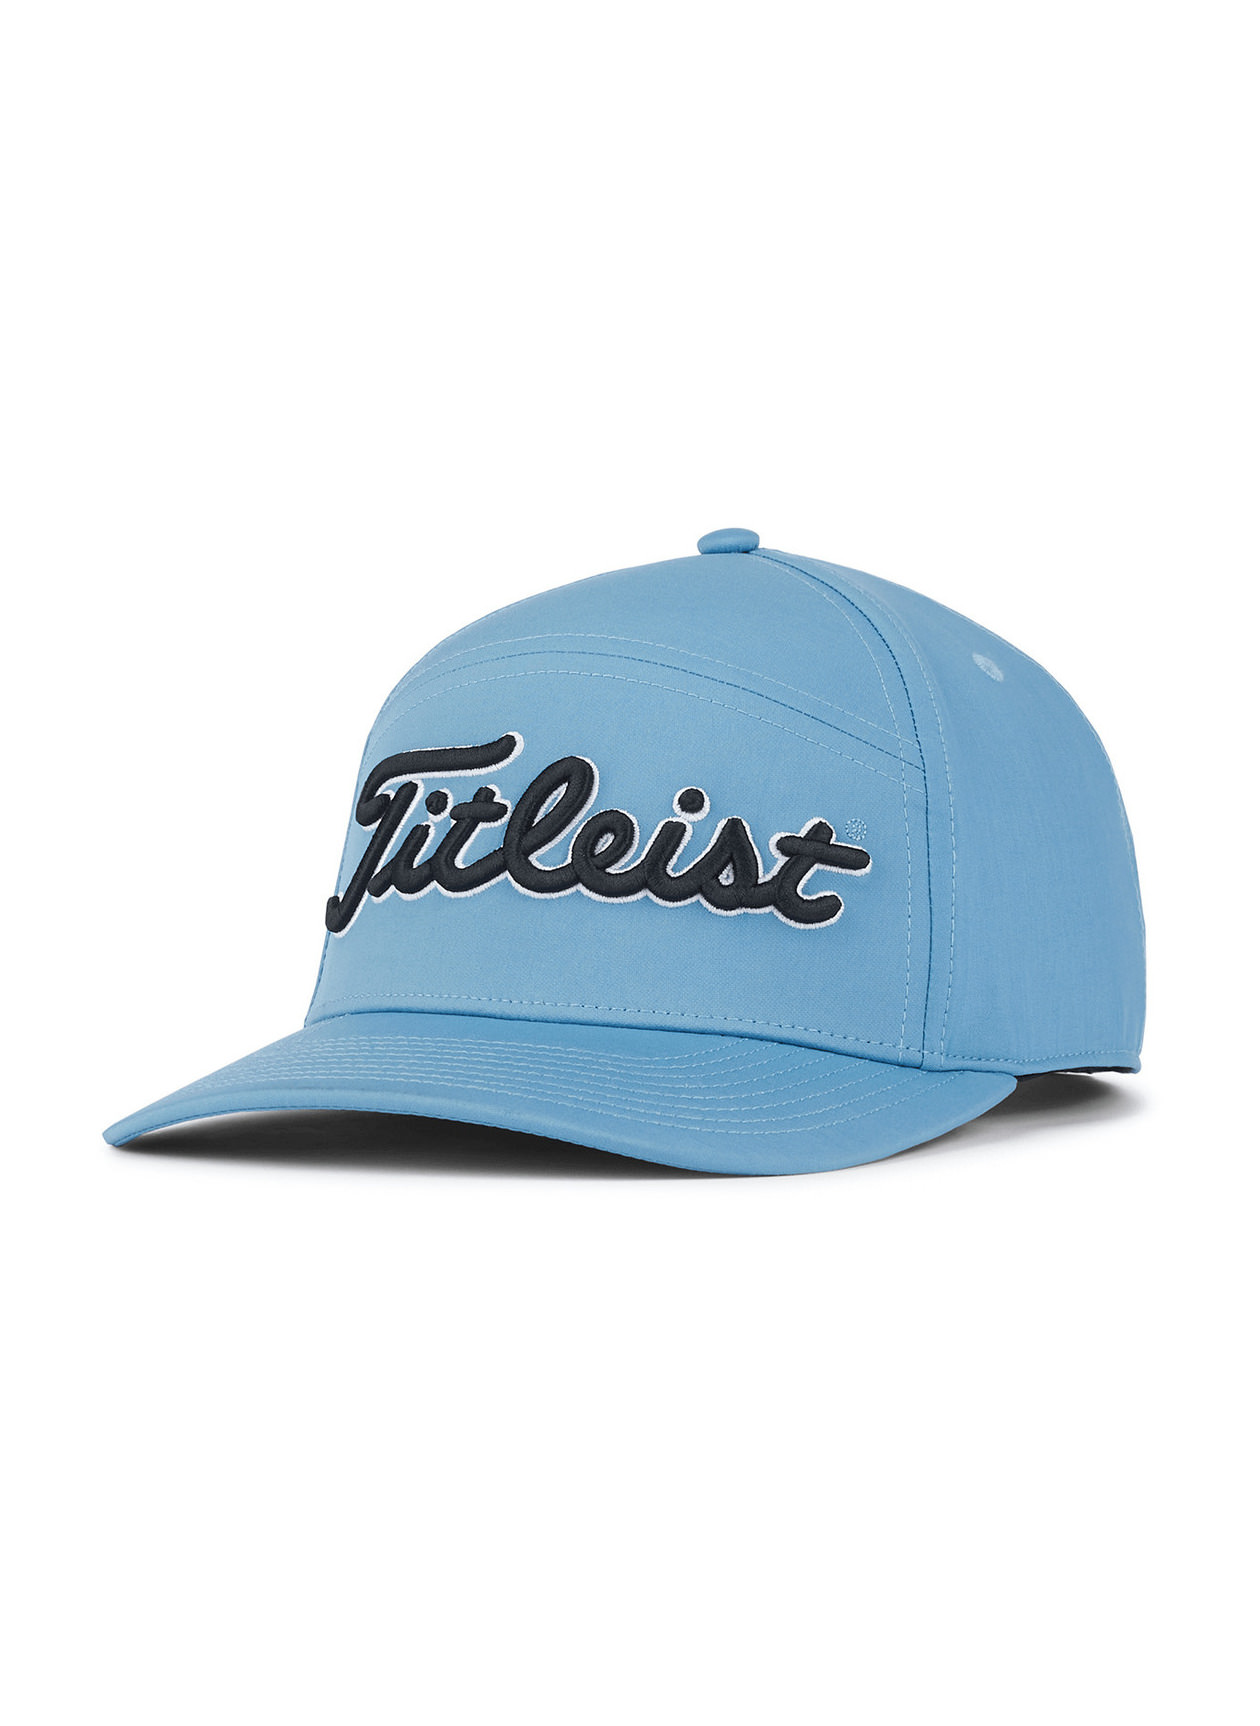 Titleist Niagra / Black Diego Trend Hat